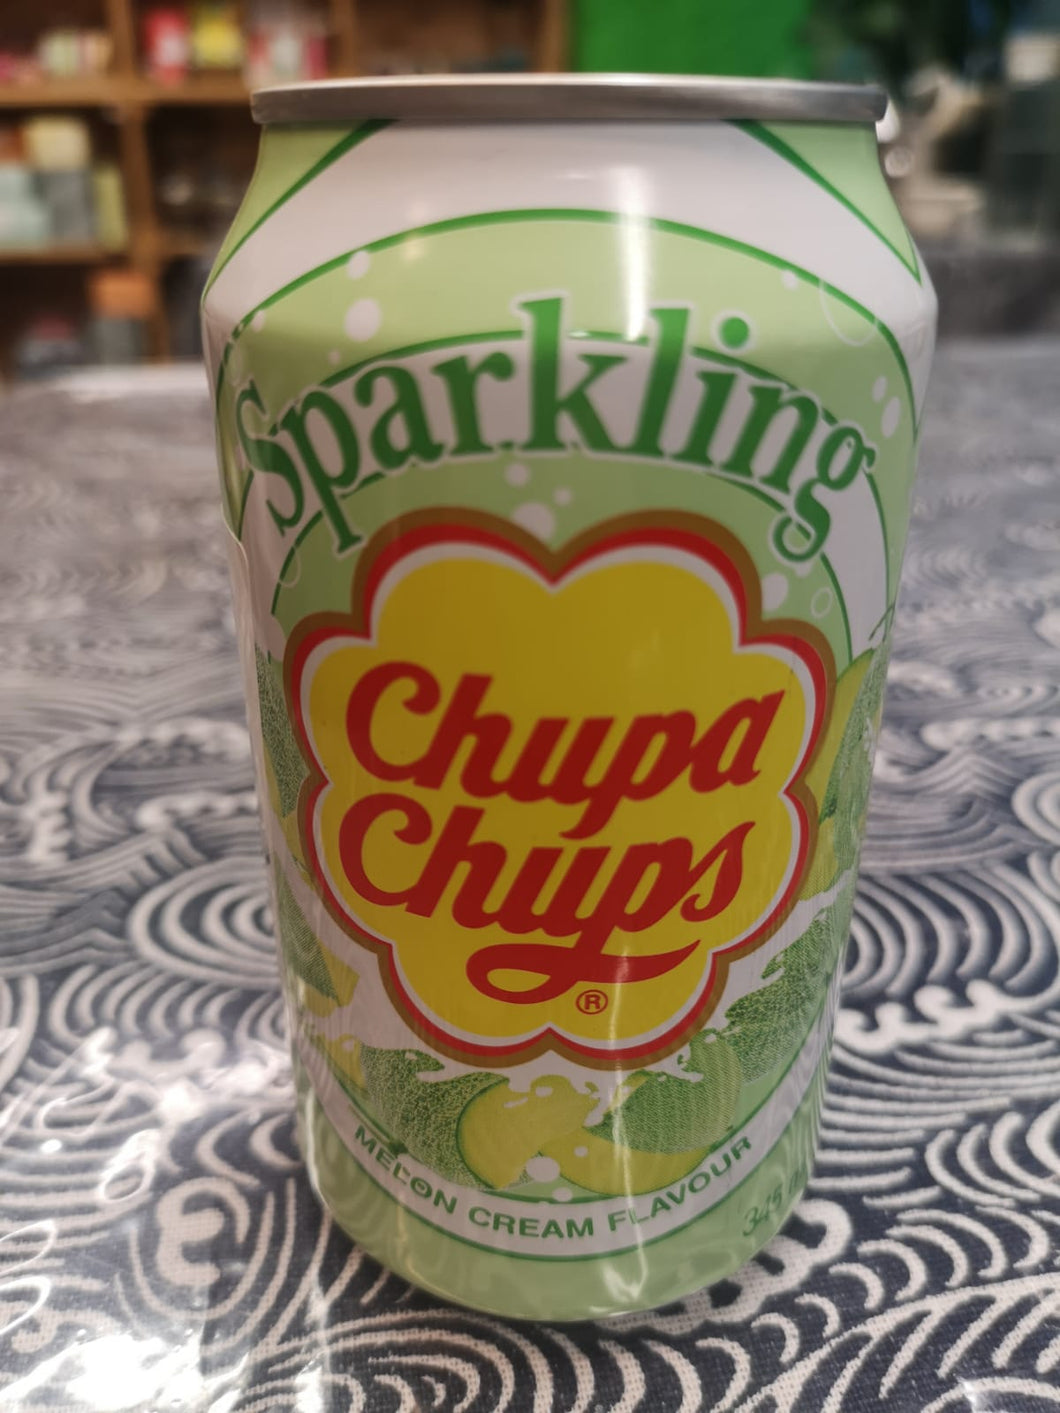 Chupa Chups Sparkling Melon Cream